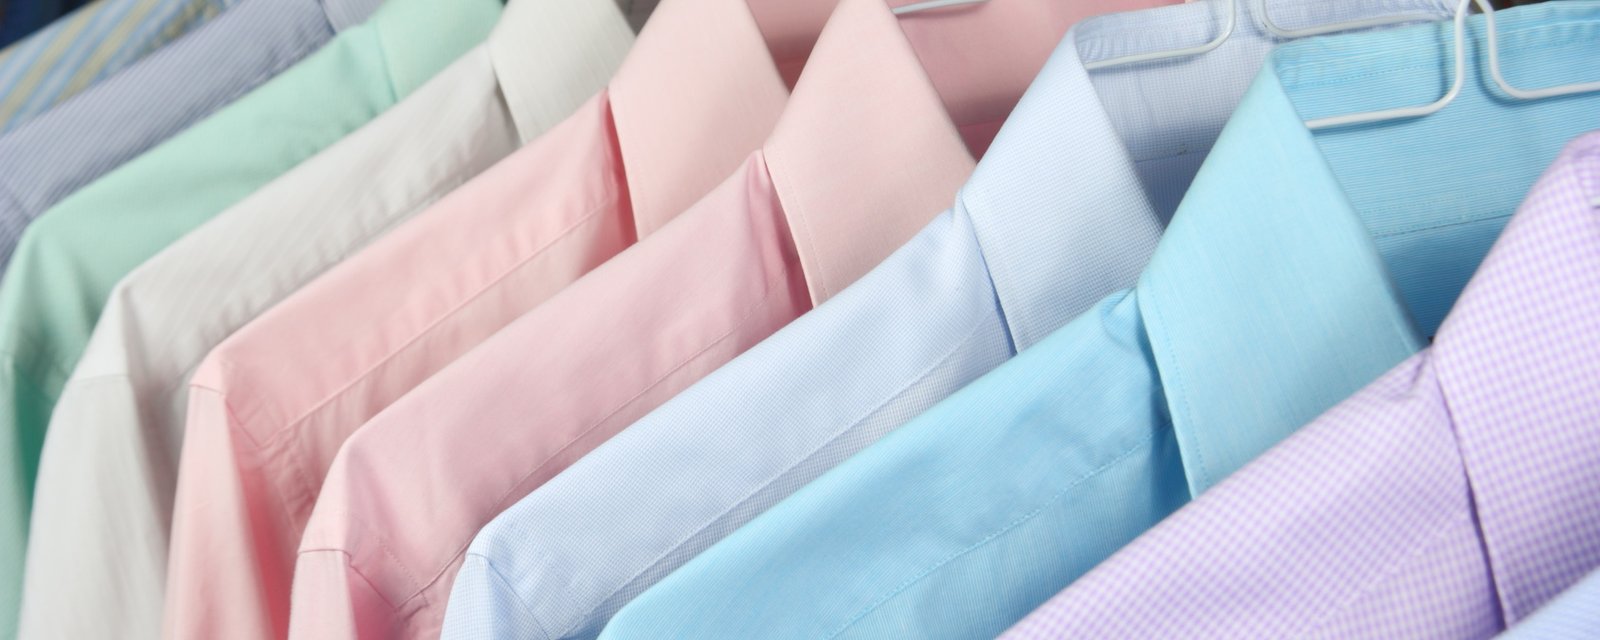 Savez-vous pourquoi les boutons sur les chemises des hommes et des femmes ne sont pas du même côté?